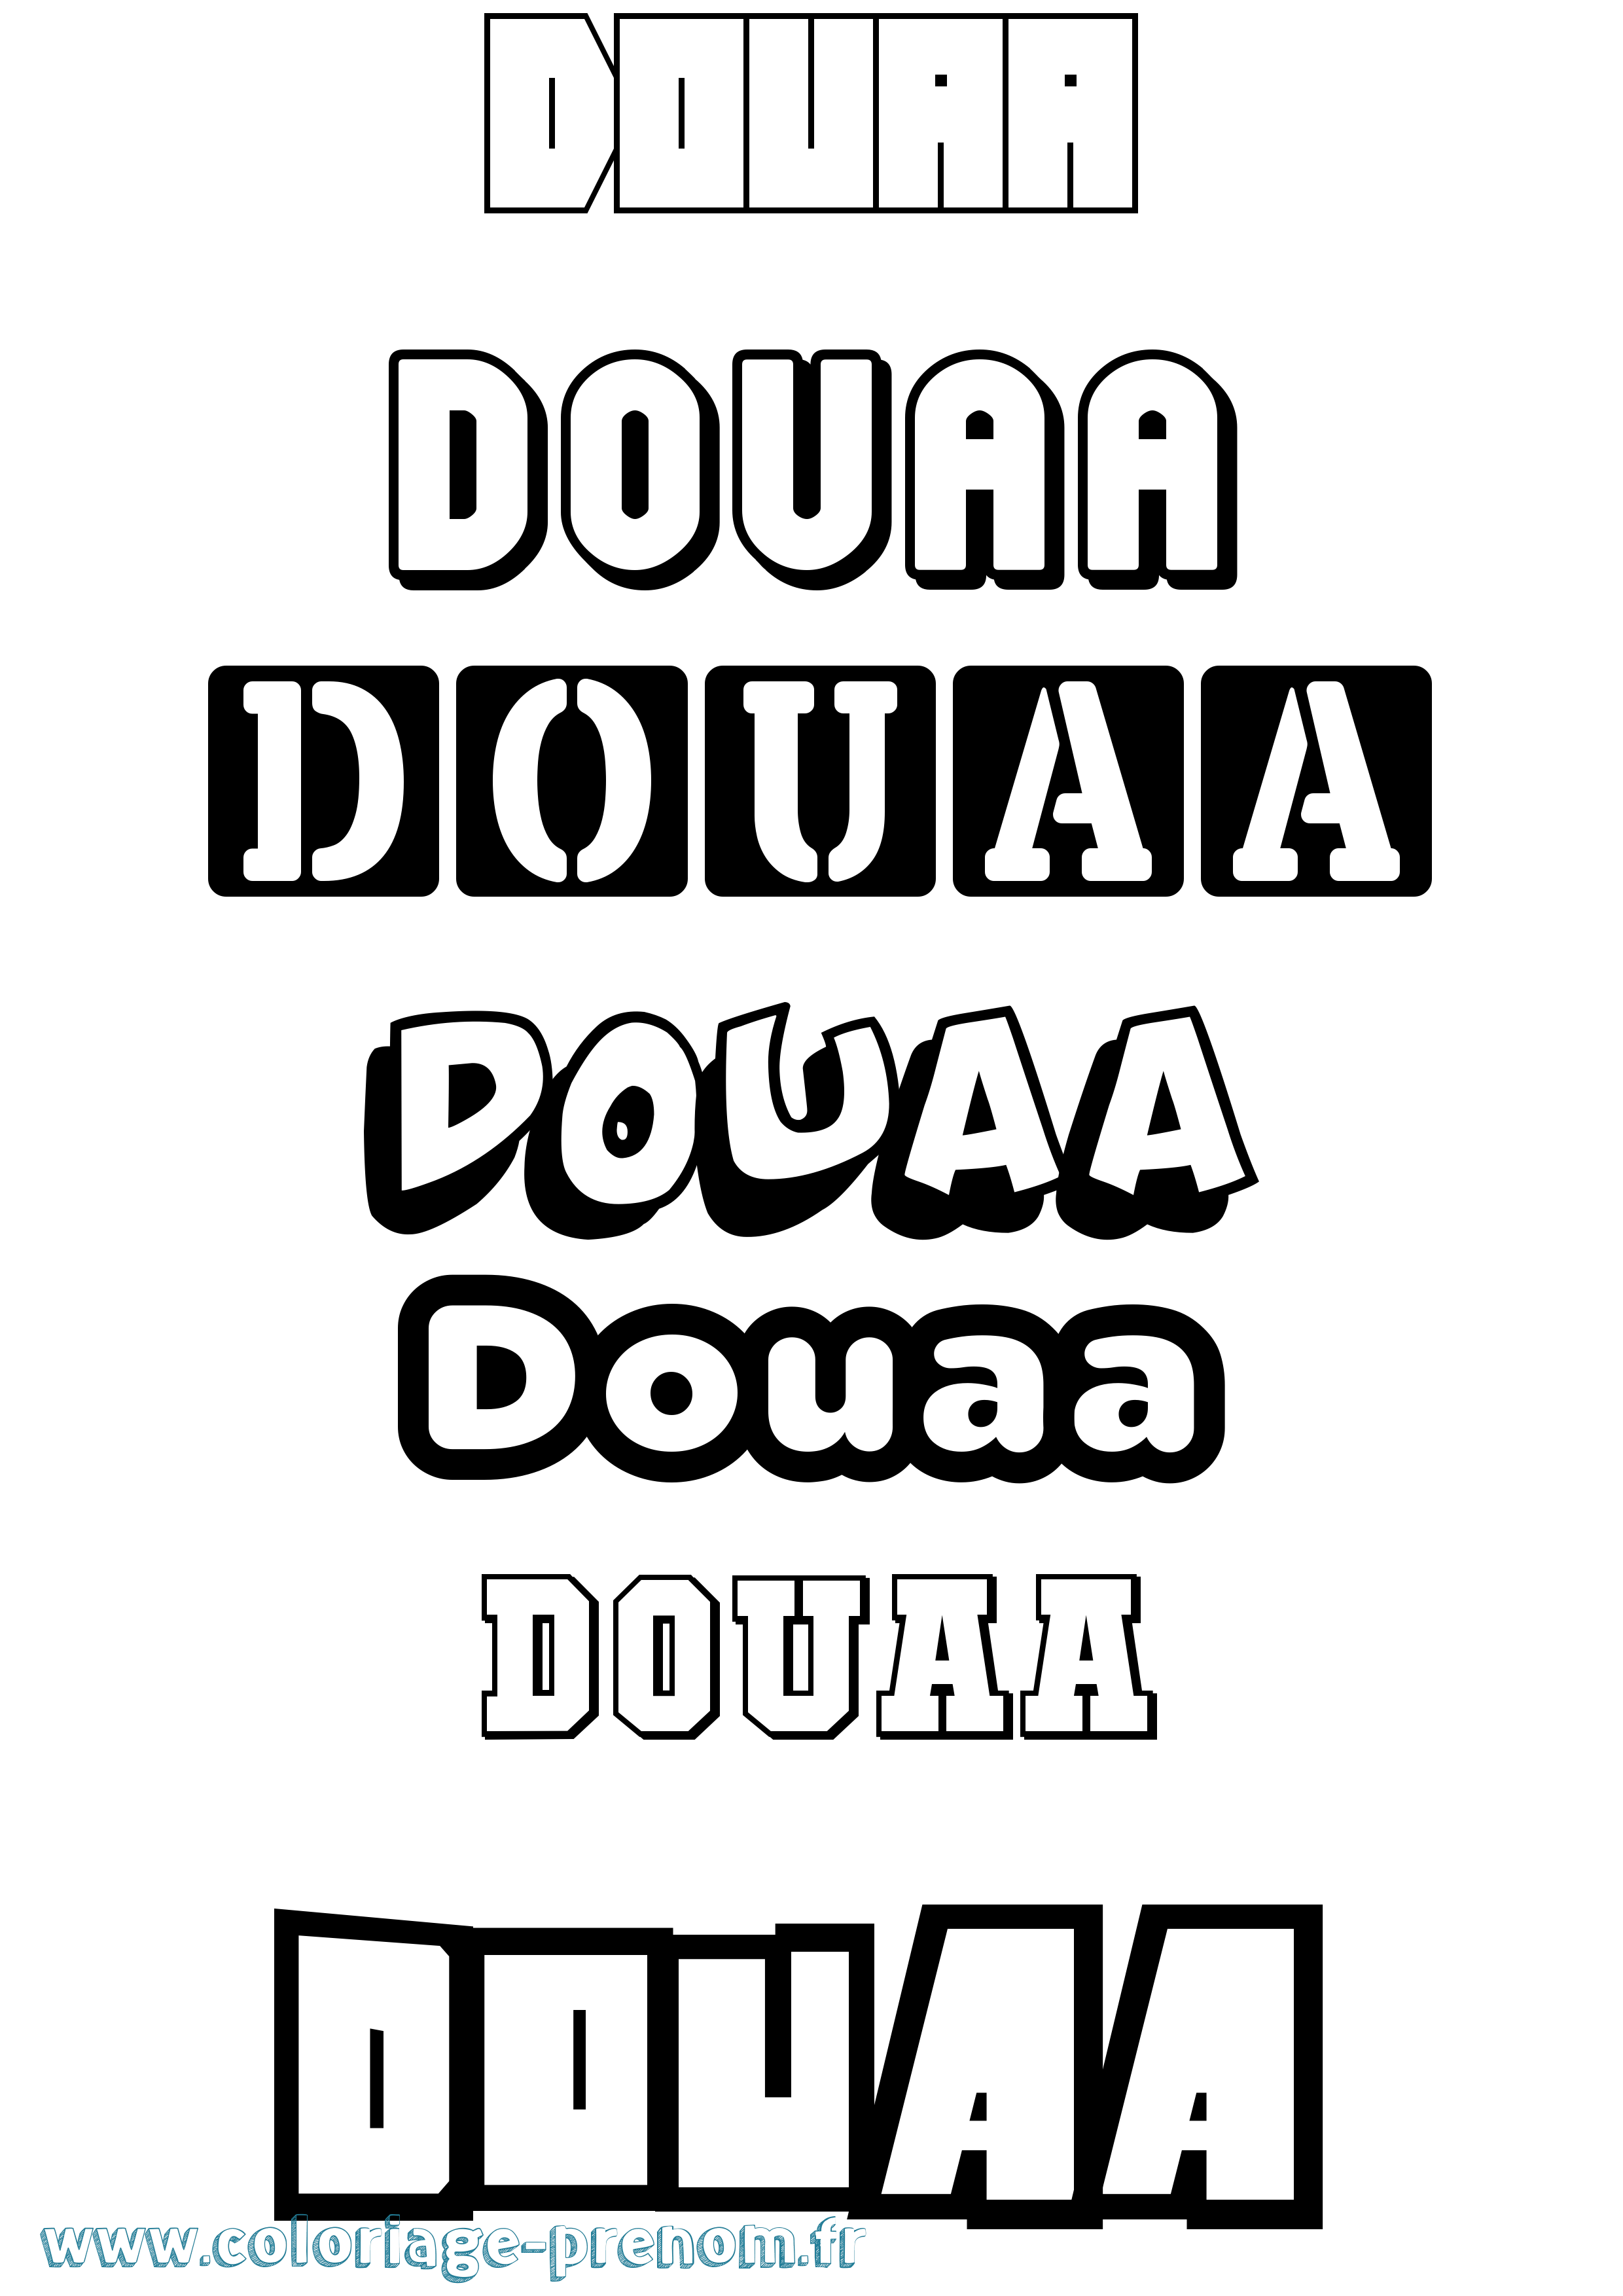 Coloriage prénom Douaa Simple